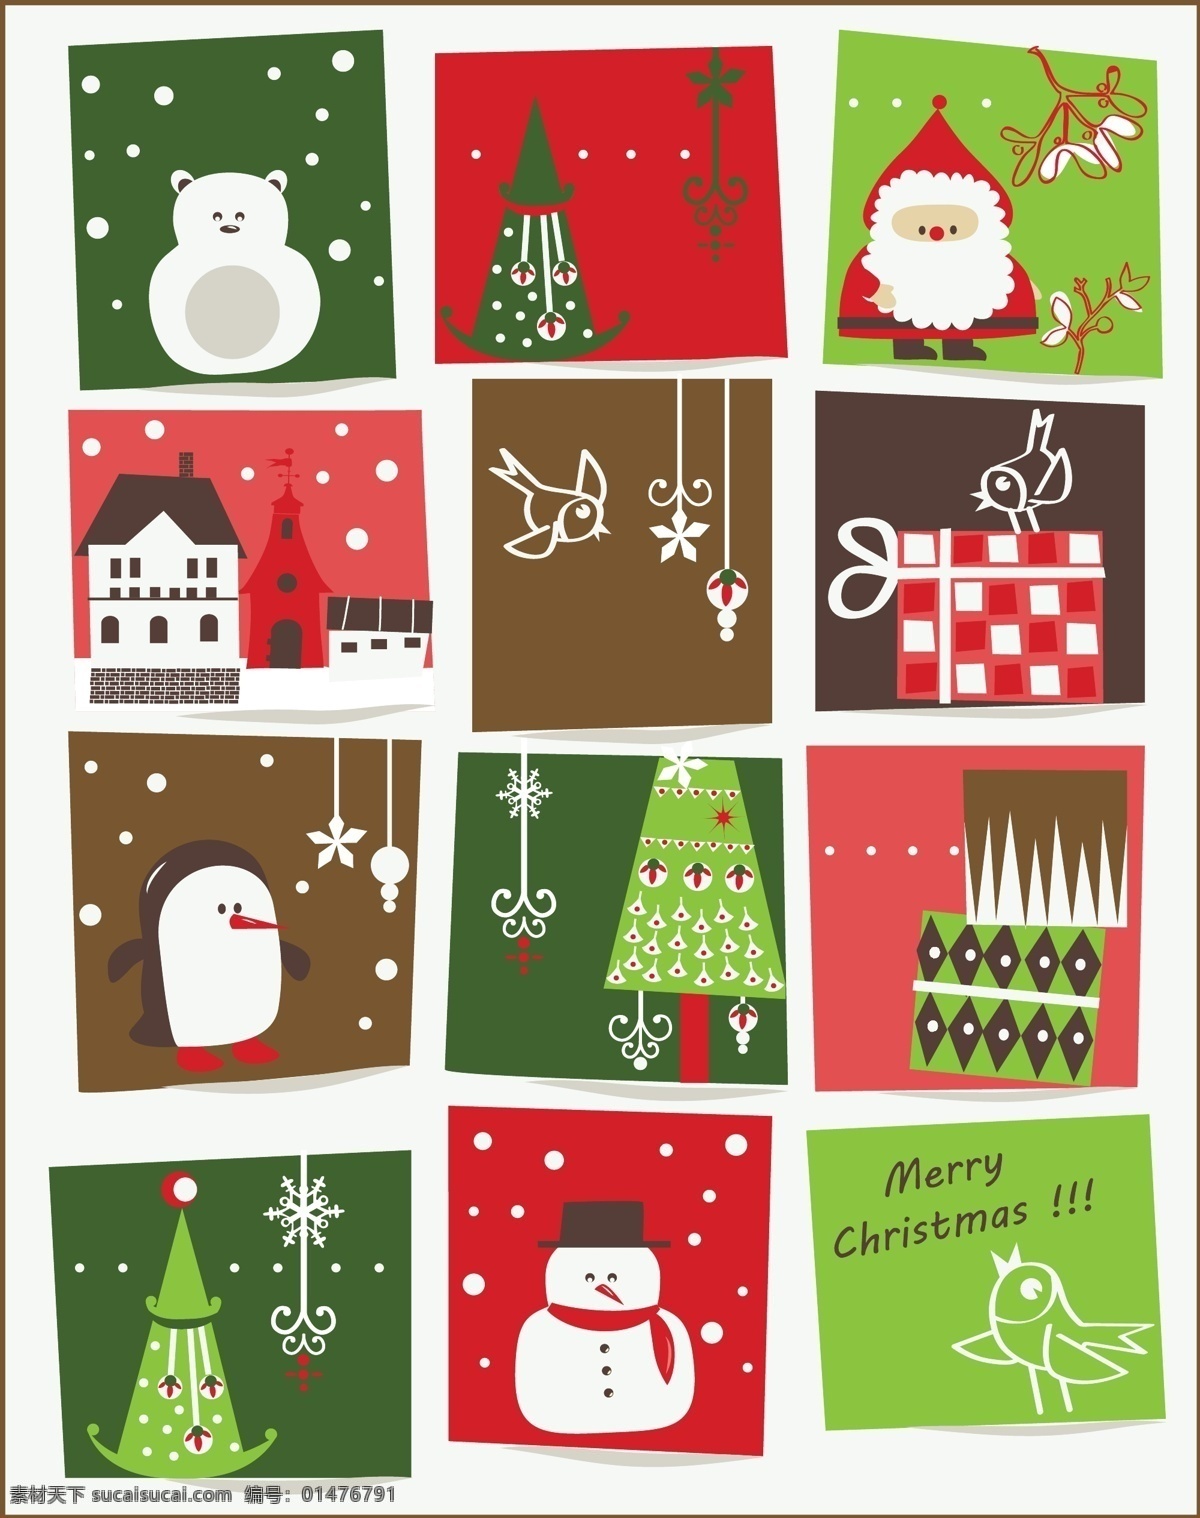 堆雪人 房屋 节日素材 卡通画 礼物盒 企鹅 圣诞节 圣诞节卡片 圣诞老人 卡片 矢量 模板下载 圣诞帽 小鸟 台灯 其他节日